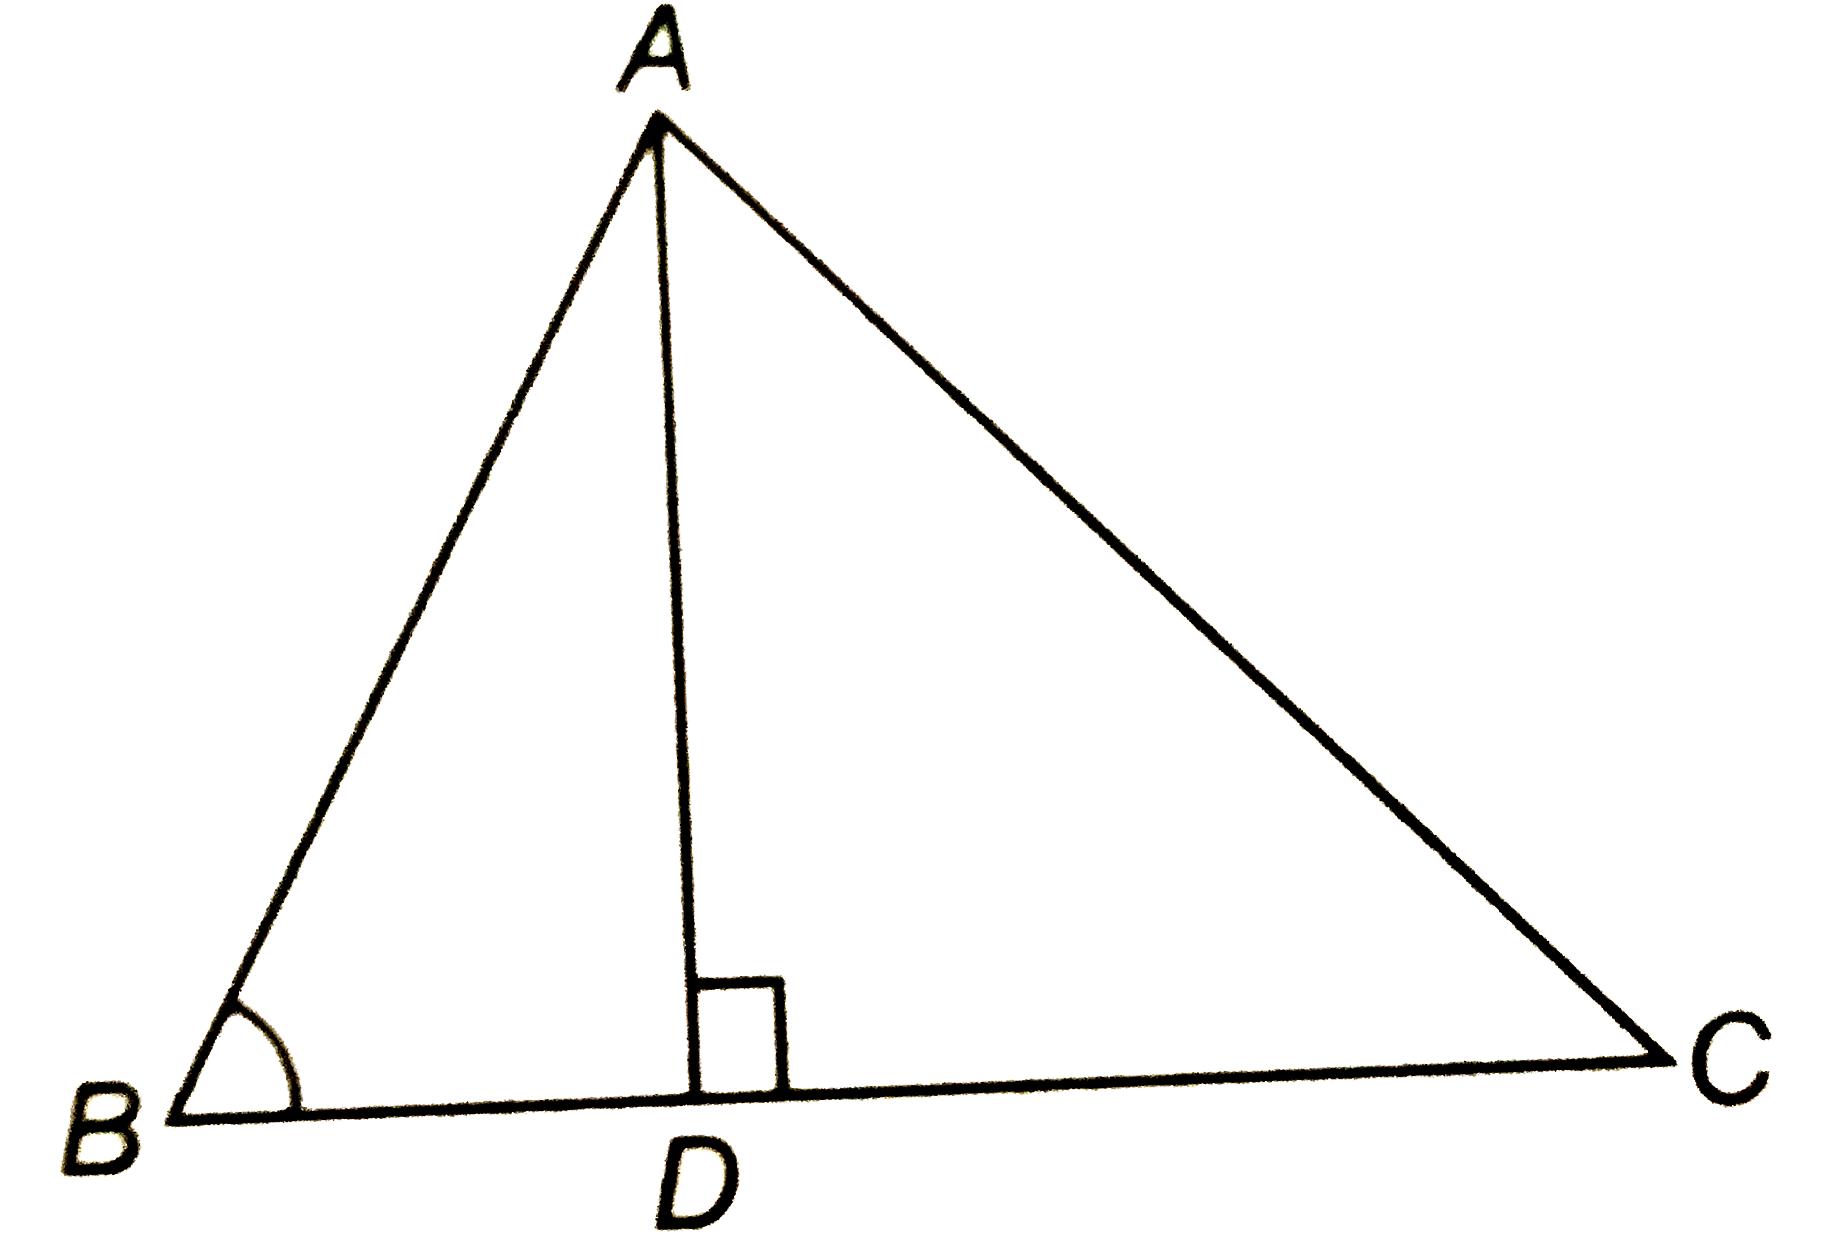 आकृति में, ABC एक त्रिभुज है जिसमे angleABClt90^@ है तथा ADbotBC है सिद्ध कीजिये कि  AC^2=AB^2+BC^2-2BC.BD  है